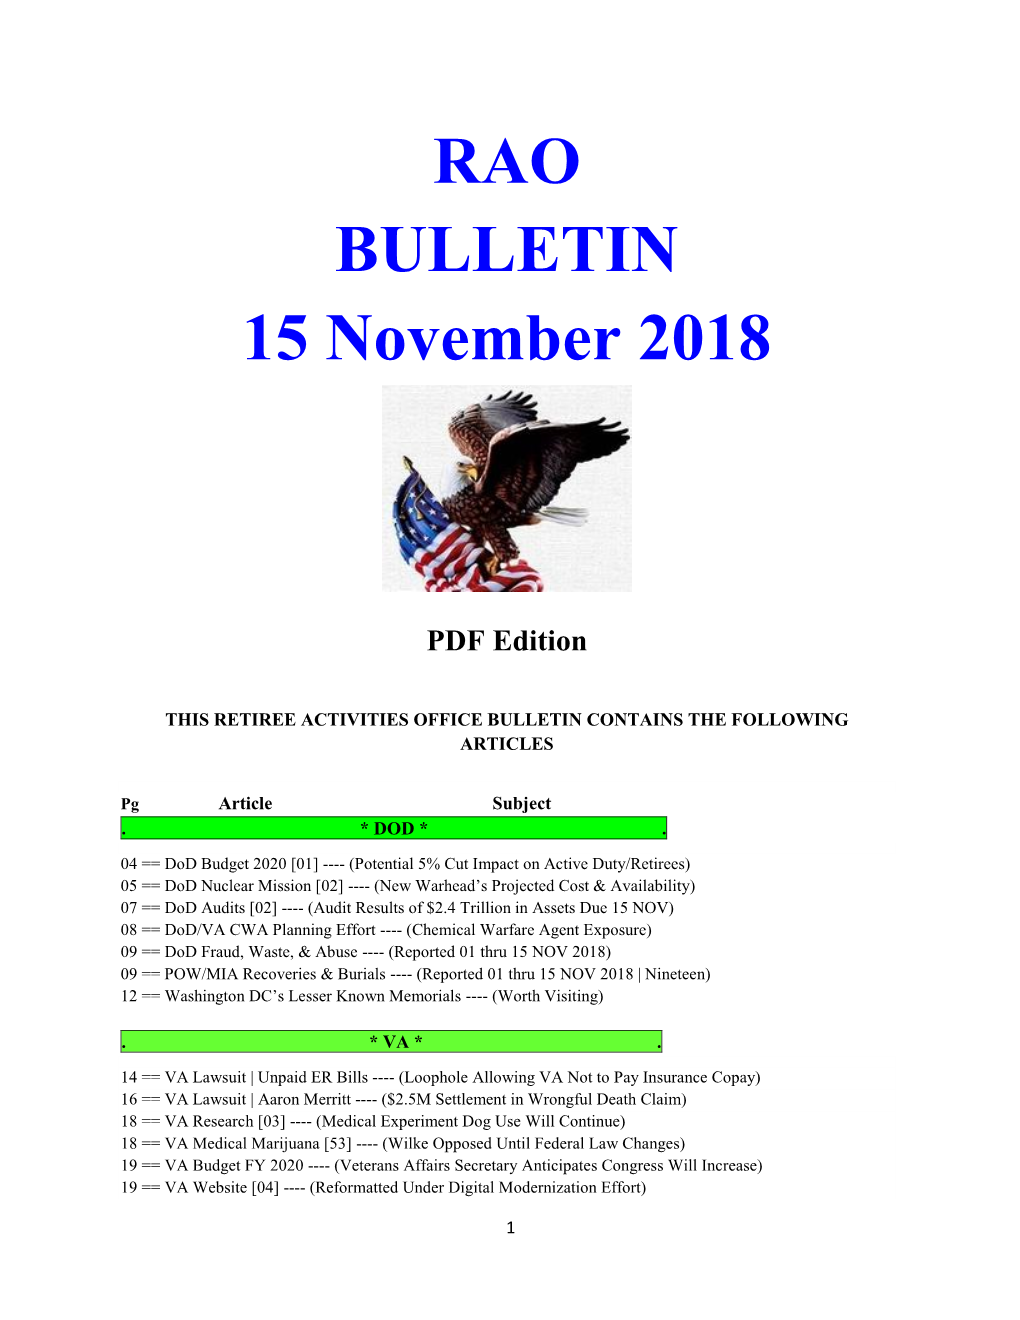 RAO BULLETIN 15 November 2018